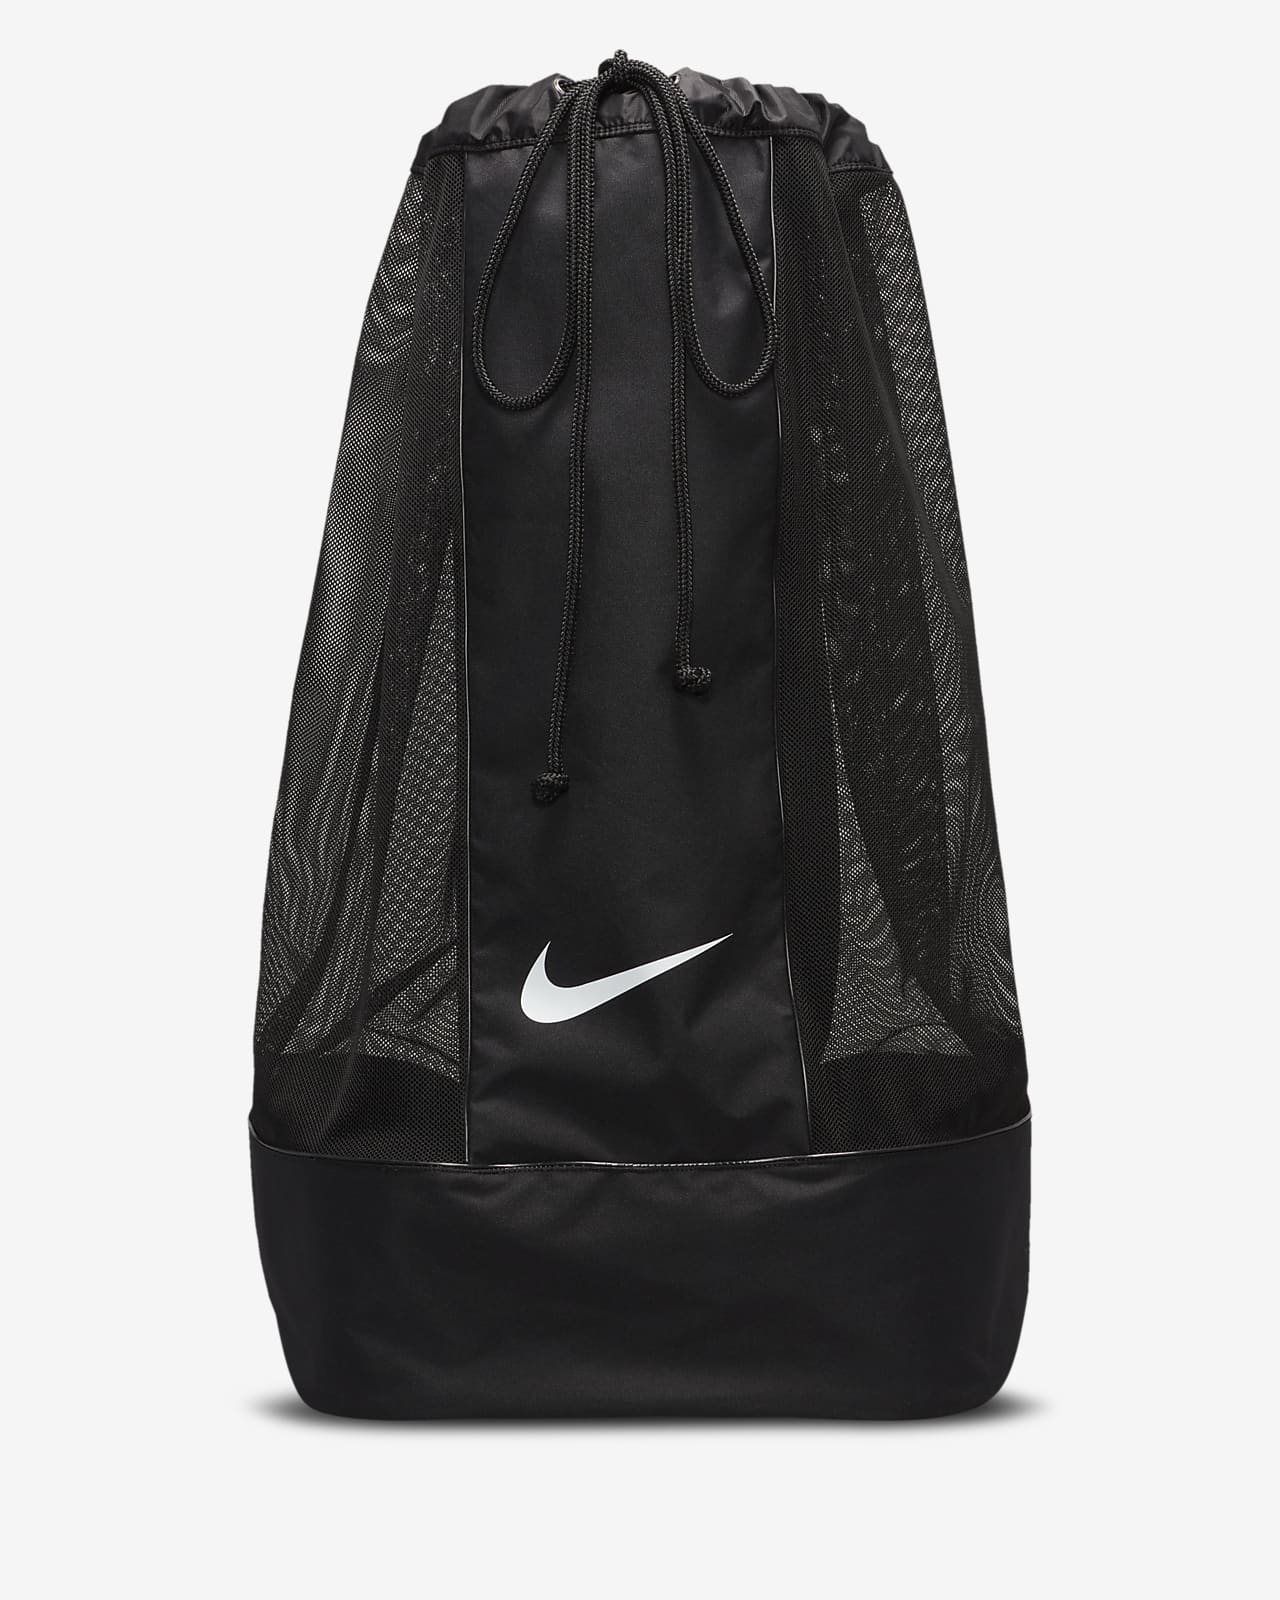 Team Soccer Ball Bag. Nike JP